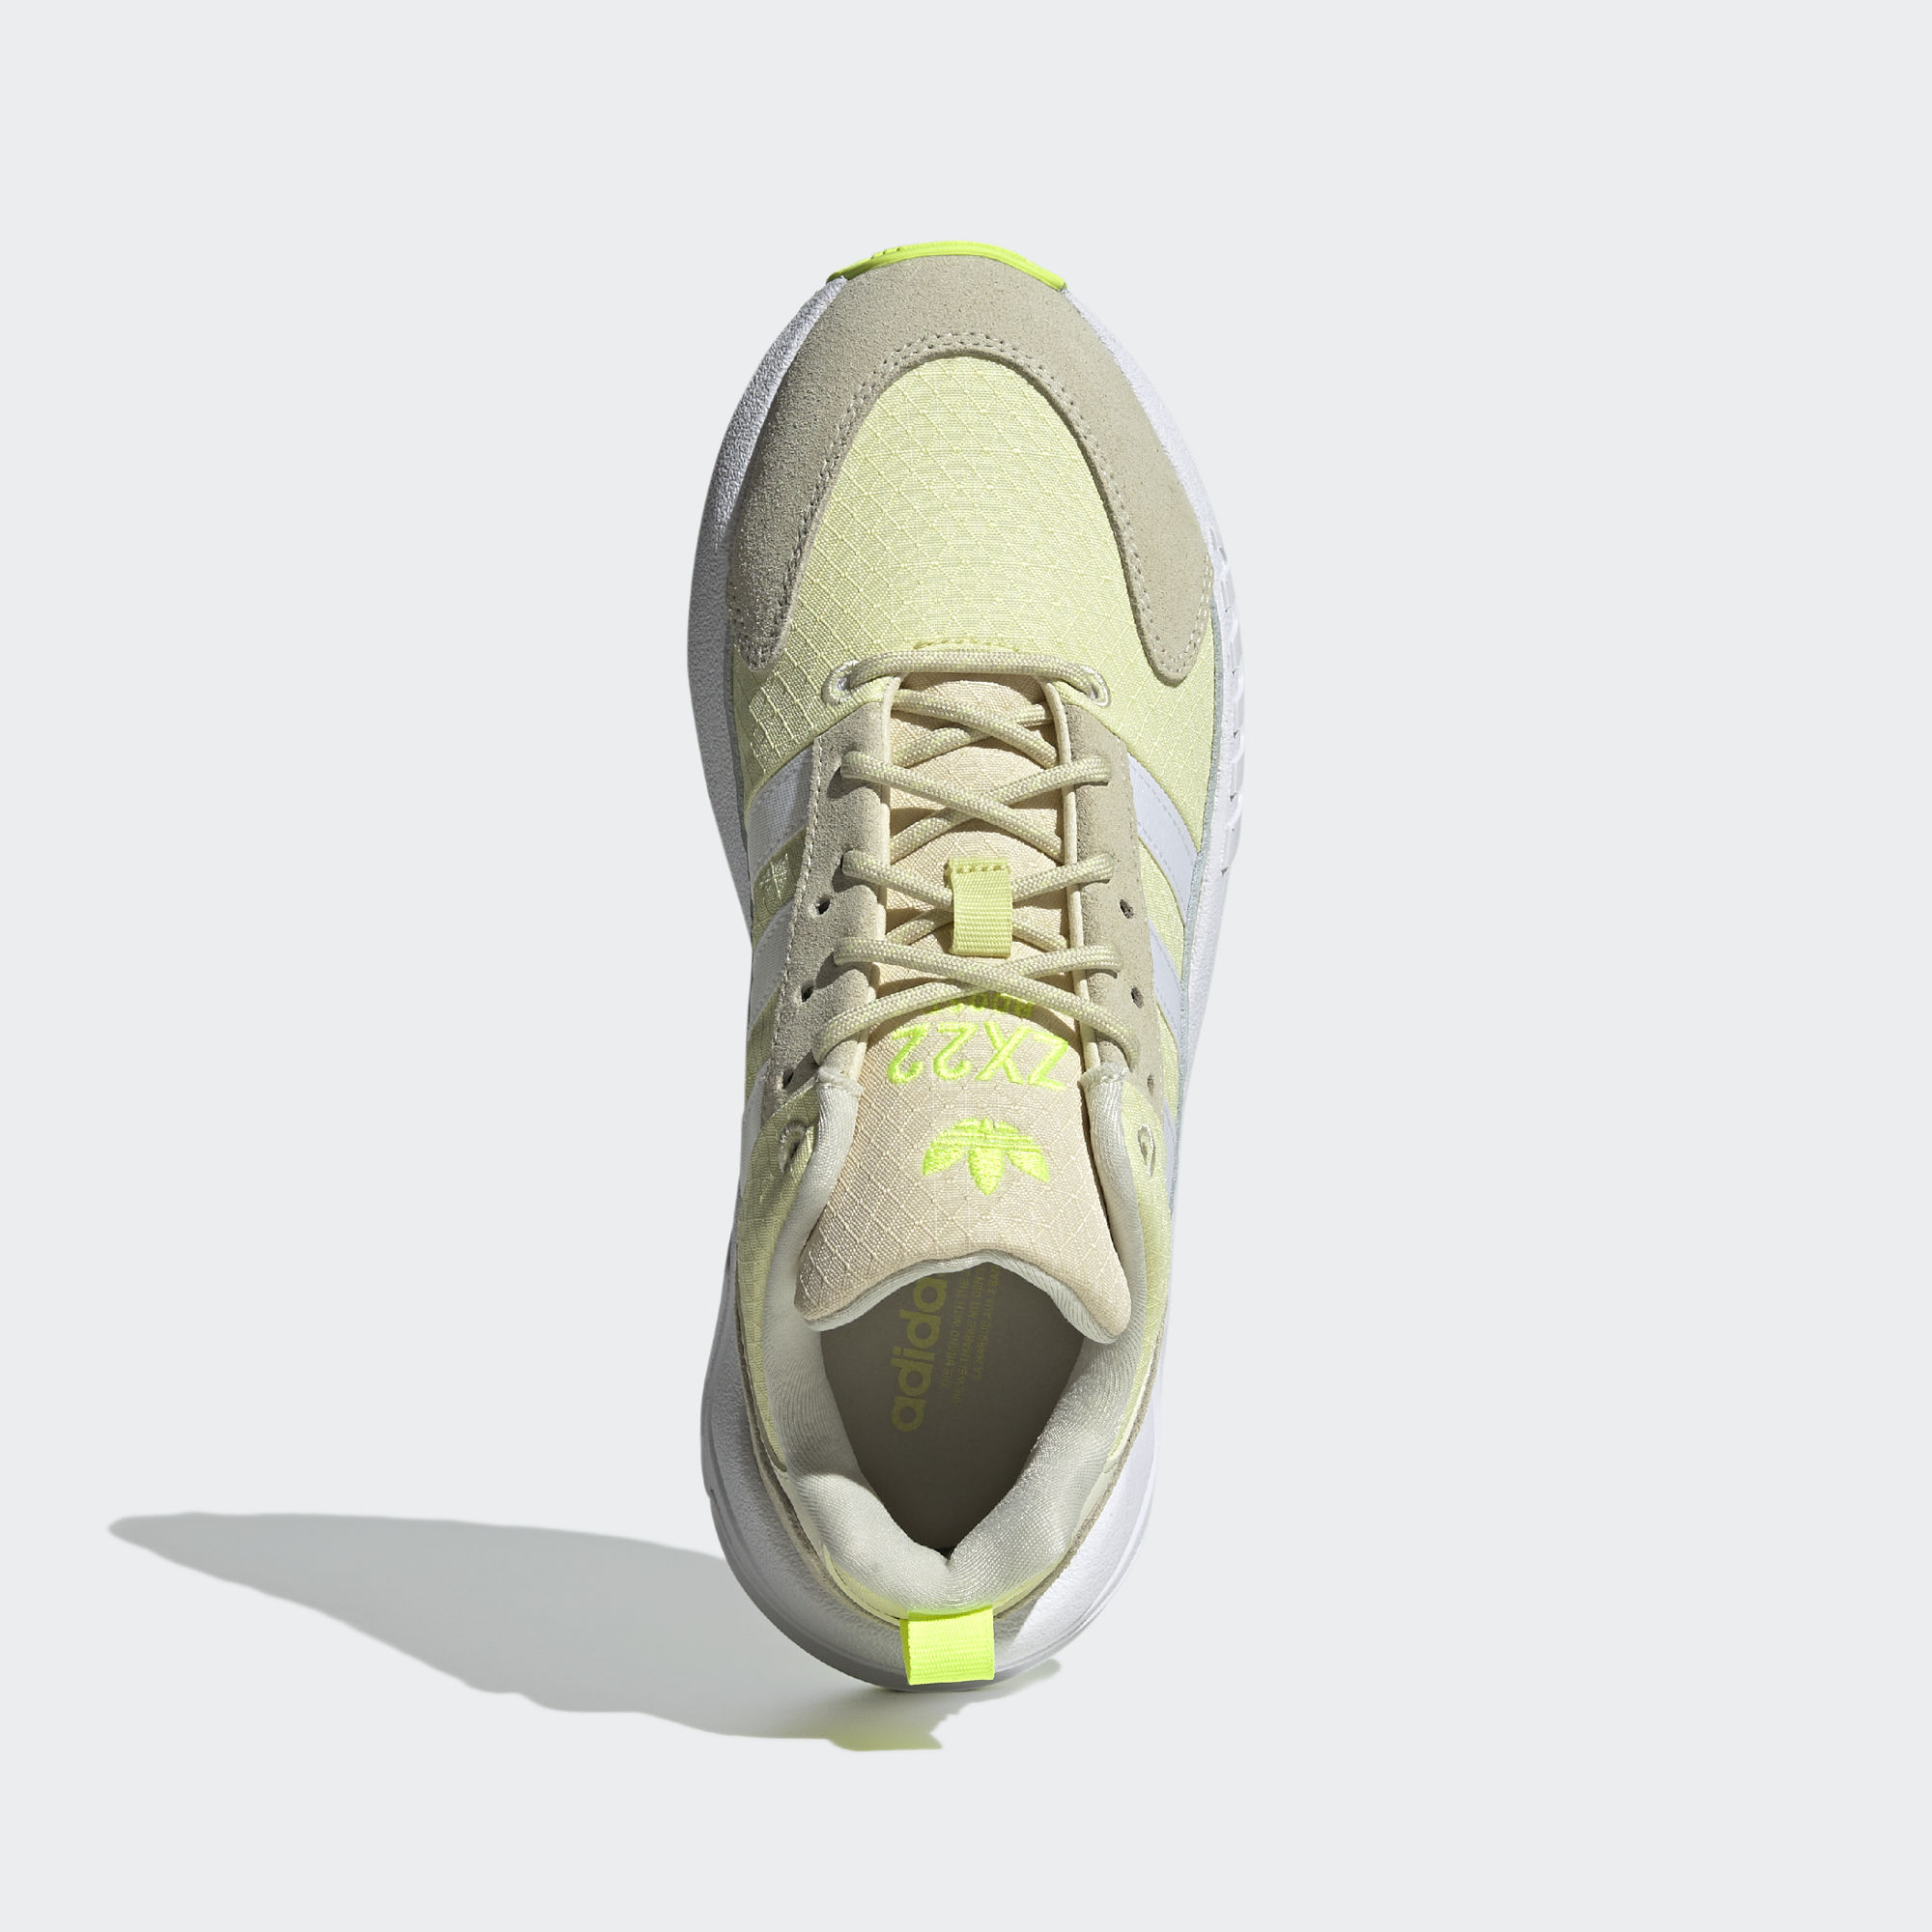 ZX 22 BOOST 運動鞋- 米色| 女子| adidas(愛迪達)香港官方網上商店